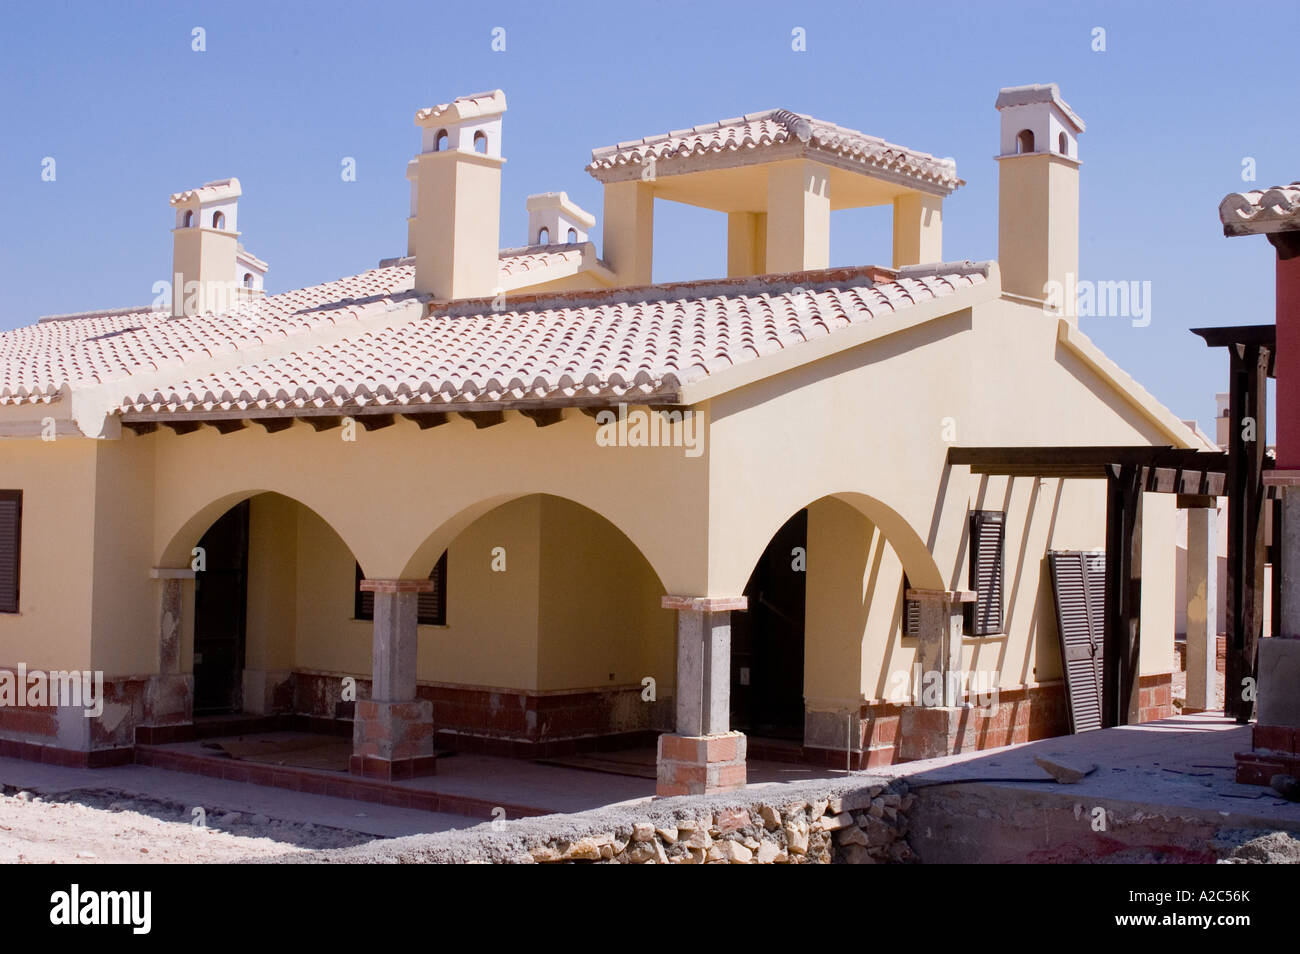 Eigenschaften auf der Hacienda del Alamo Immobilienentwicklung Fuente Alamo Murcia Spanien, die unter Beschuss geraten hat gebaut Stockfoto